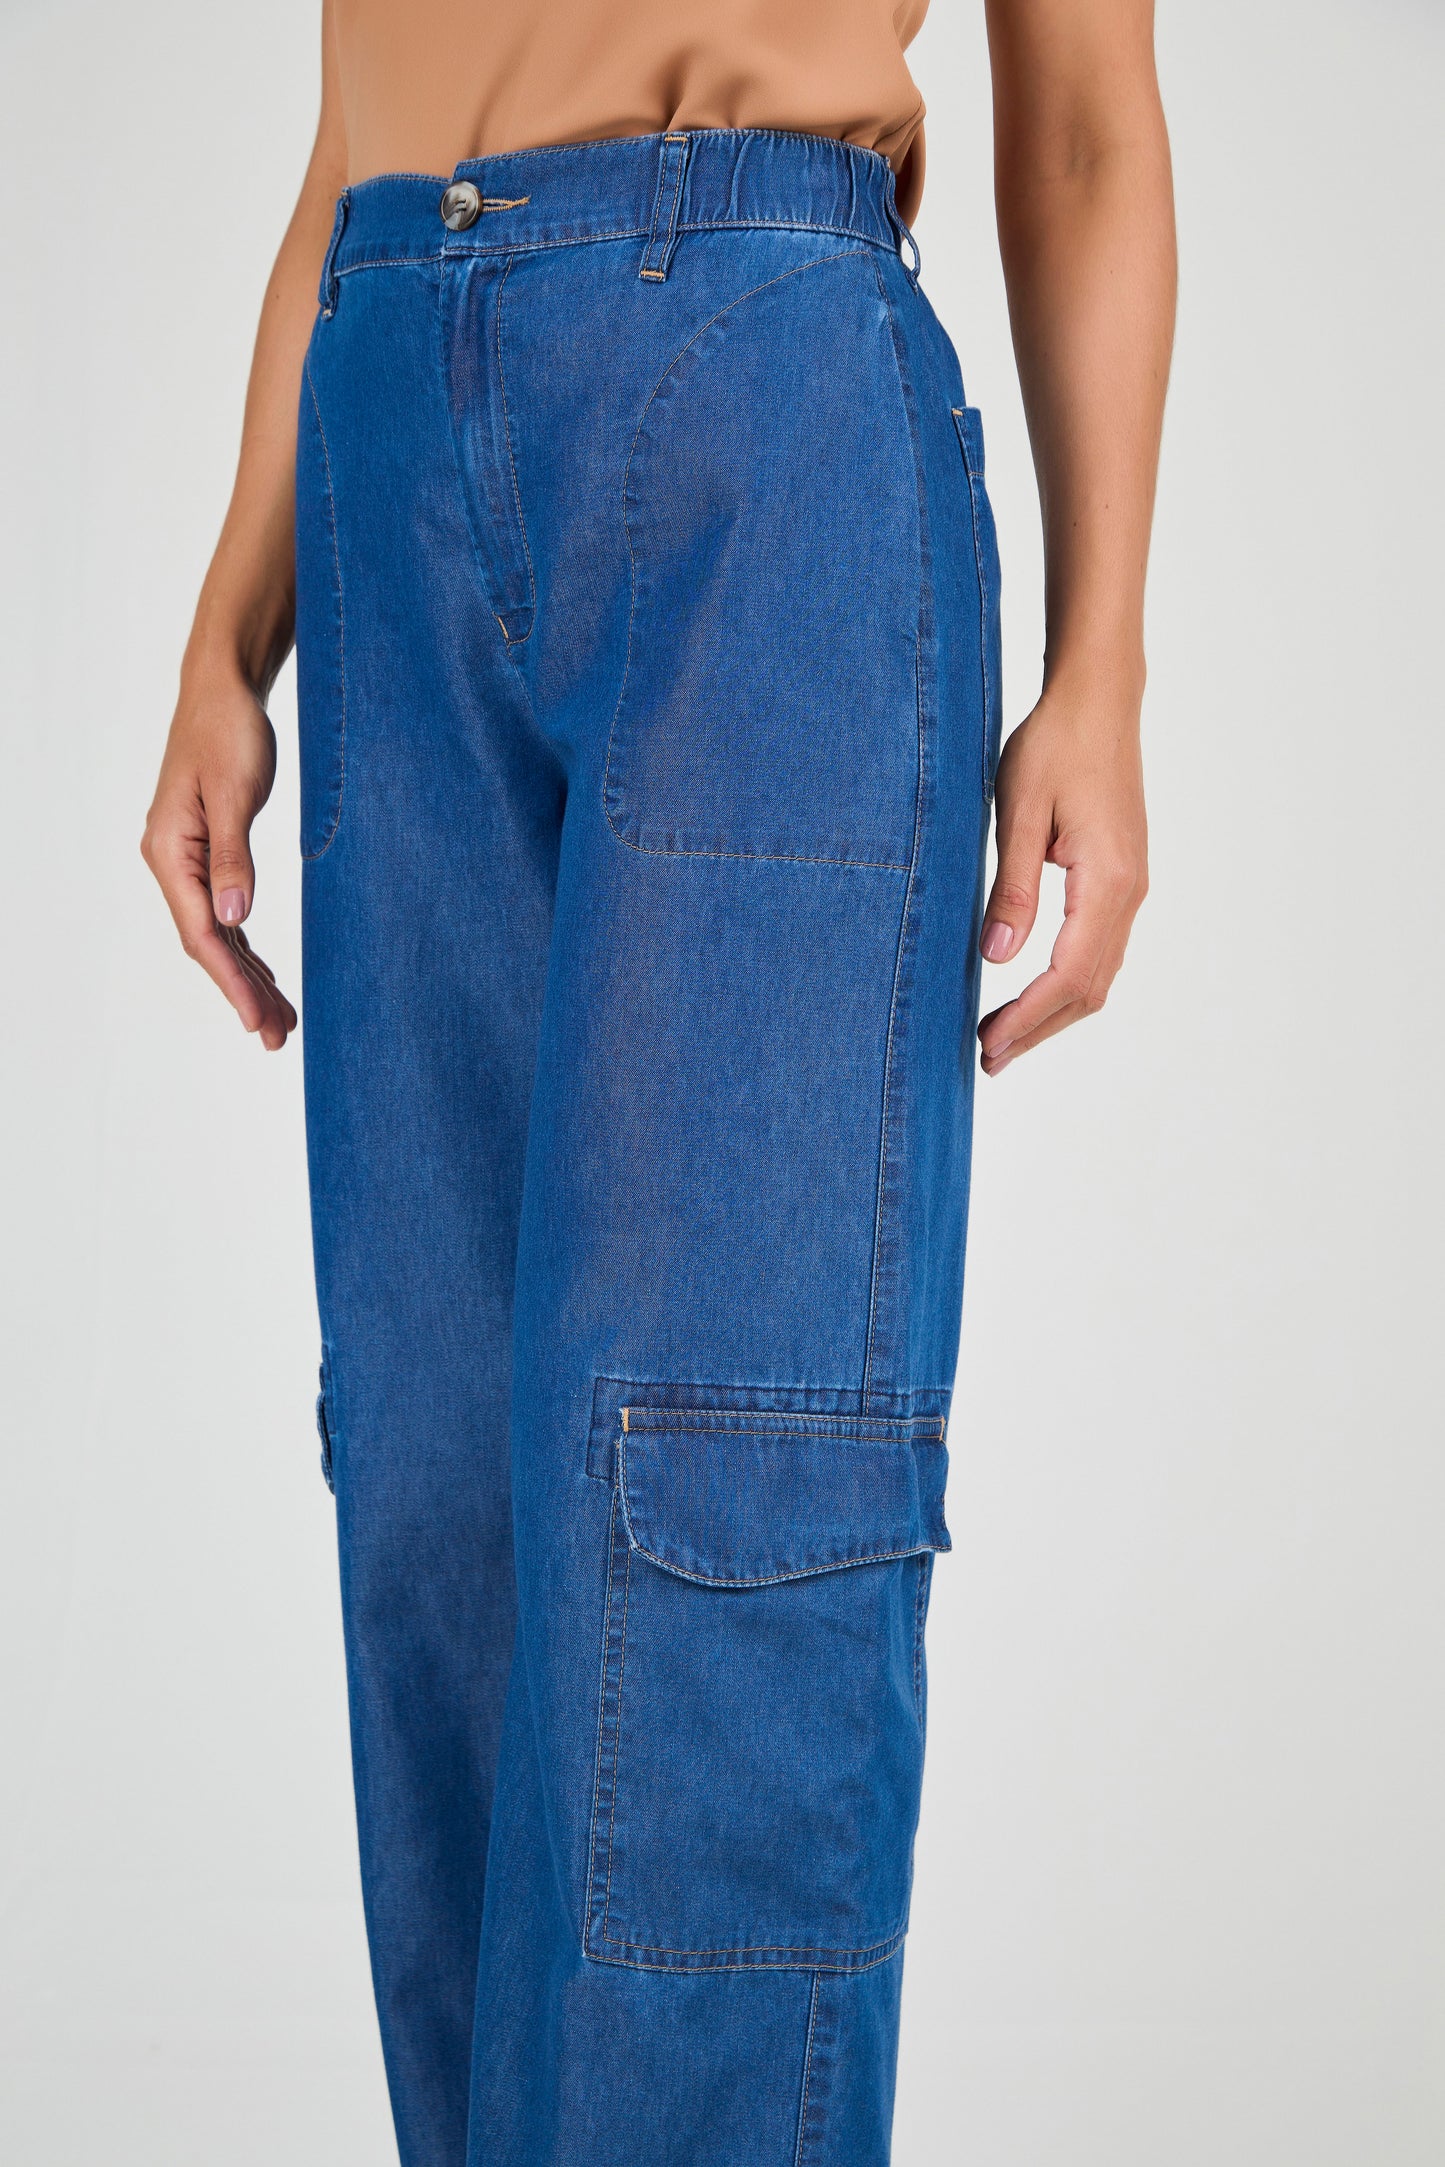 calça jeans pantalona cintura intermediária com bolsos sobrepostos